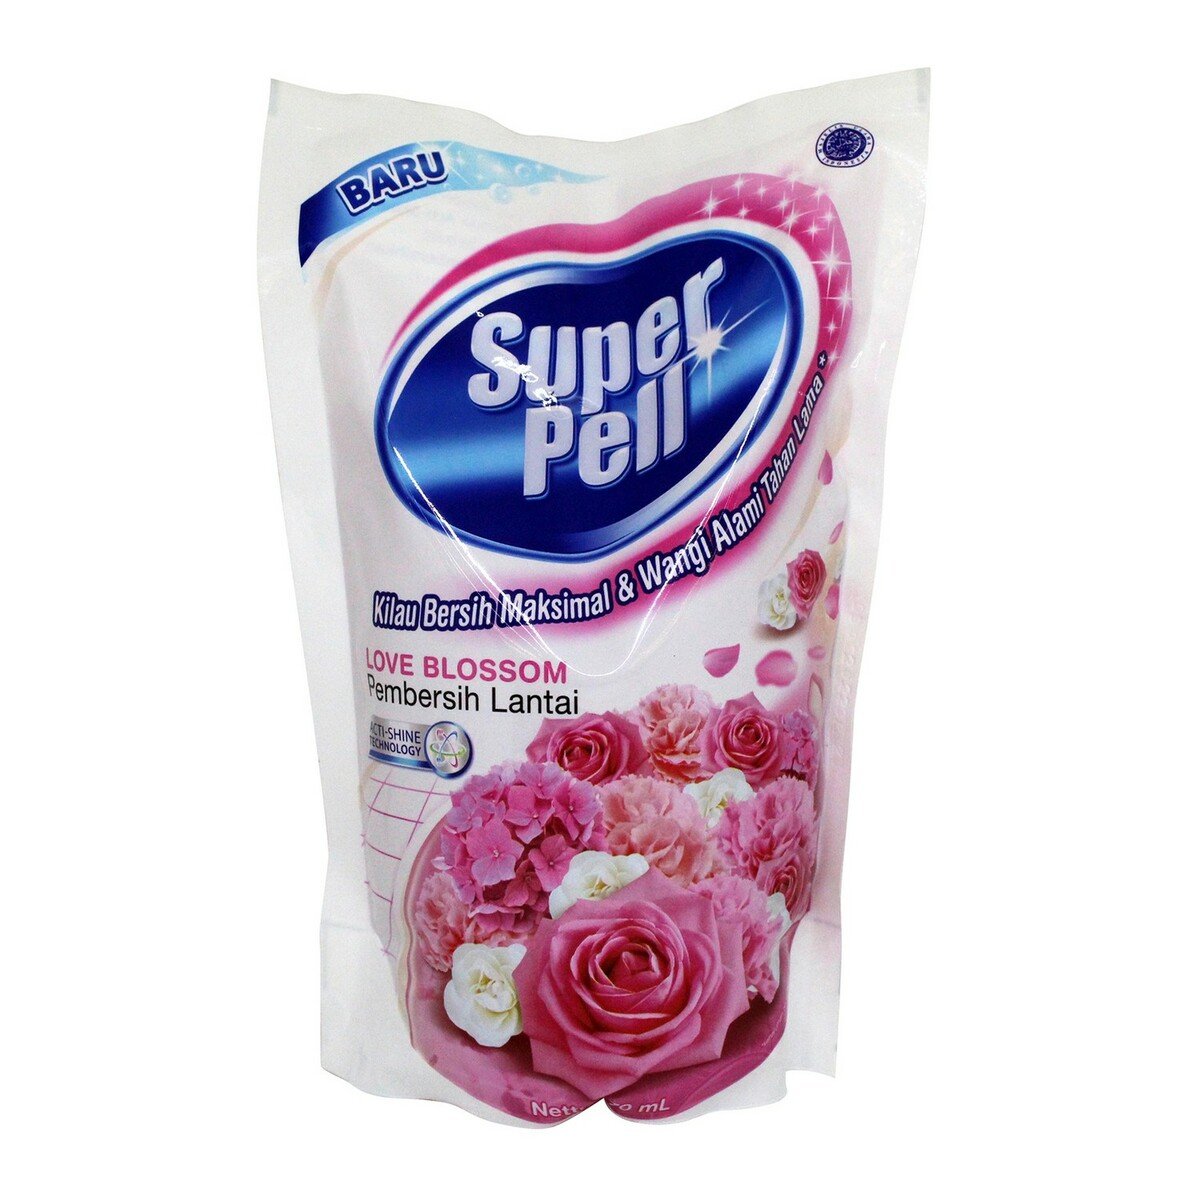 Superpell Floor Cleaner Pink Reffil 770ml